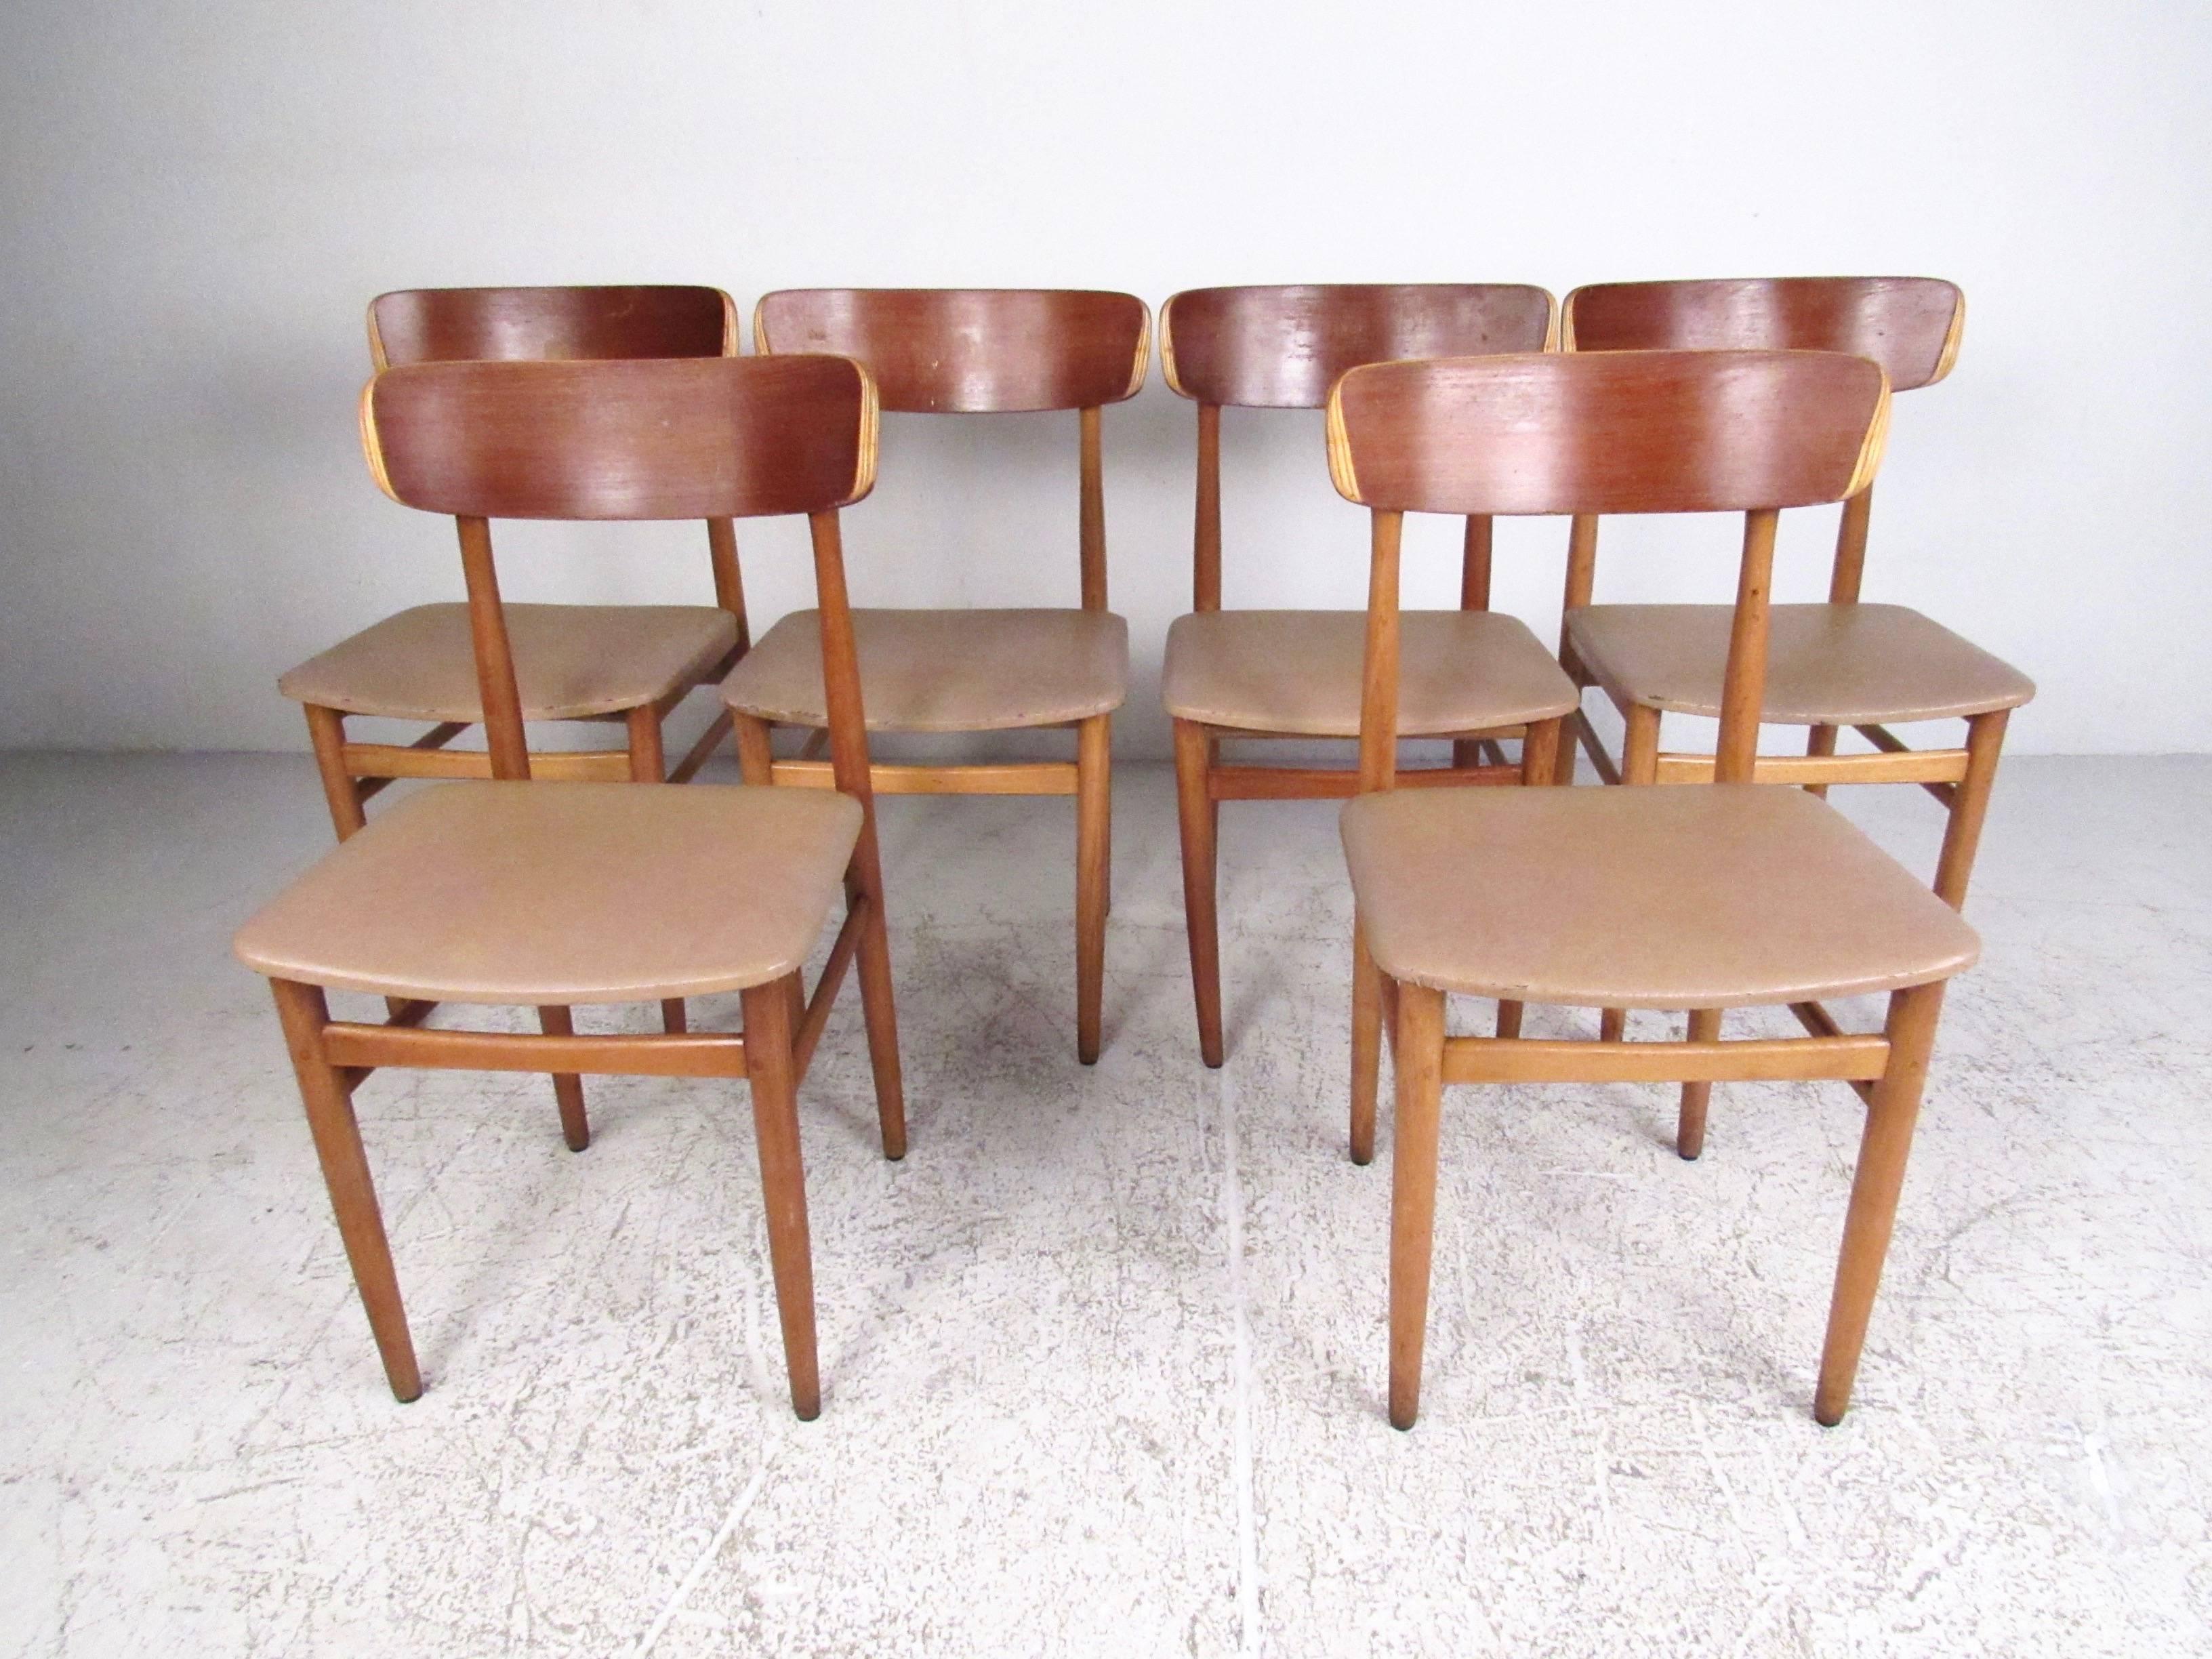 Dieses stilvolle Set von Esszimmerstühlen im skandinavischen Stil zeichnet sich durch Vinylsitze, Hartholzrahmen und ein klares, modernes Design aus. Die einfachen, aber bequemen Midcentury-Stühle sind eine einzigartige Ergänzung für Ihr Zuhause